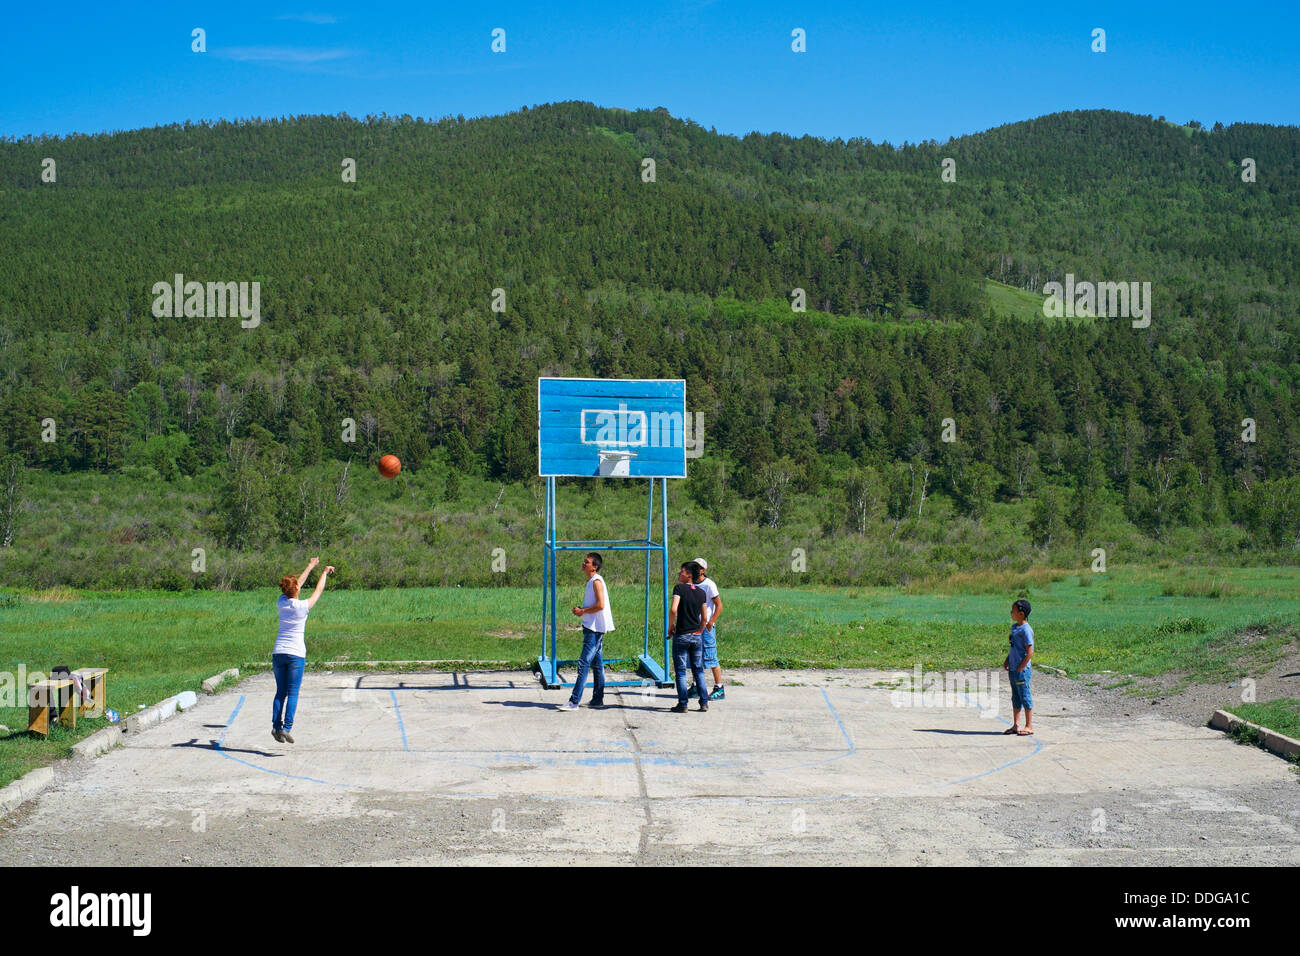 La Mongolie, Oulan Bator, Nairamdal suburb, les jeunes jouant basket ball Banque D'Images